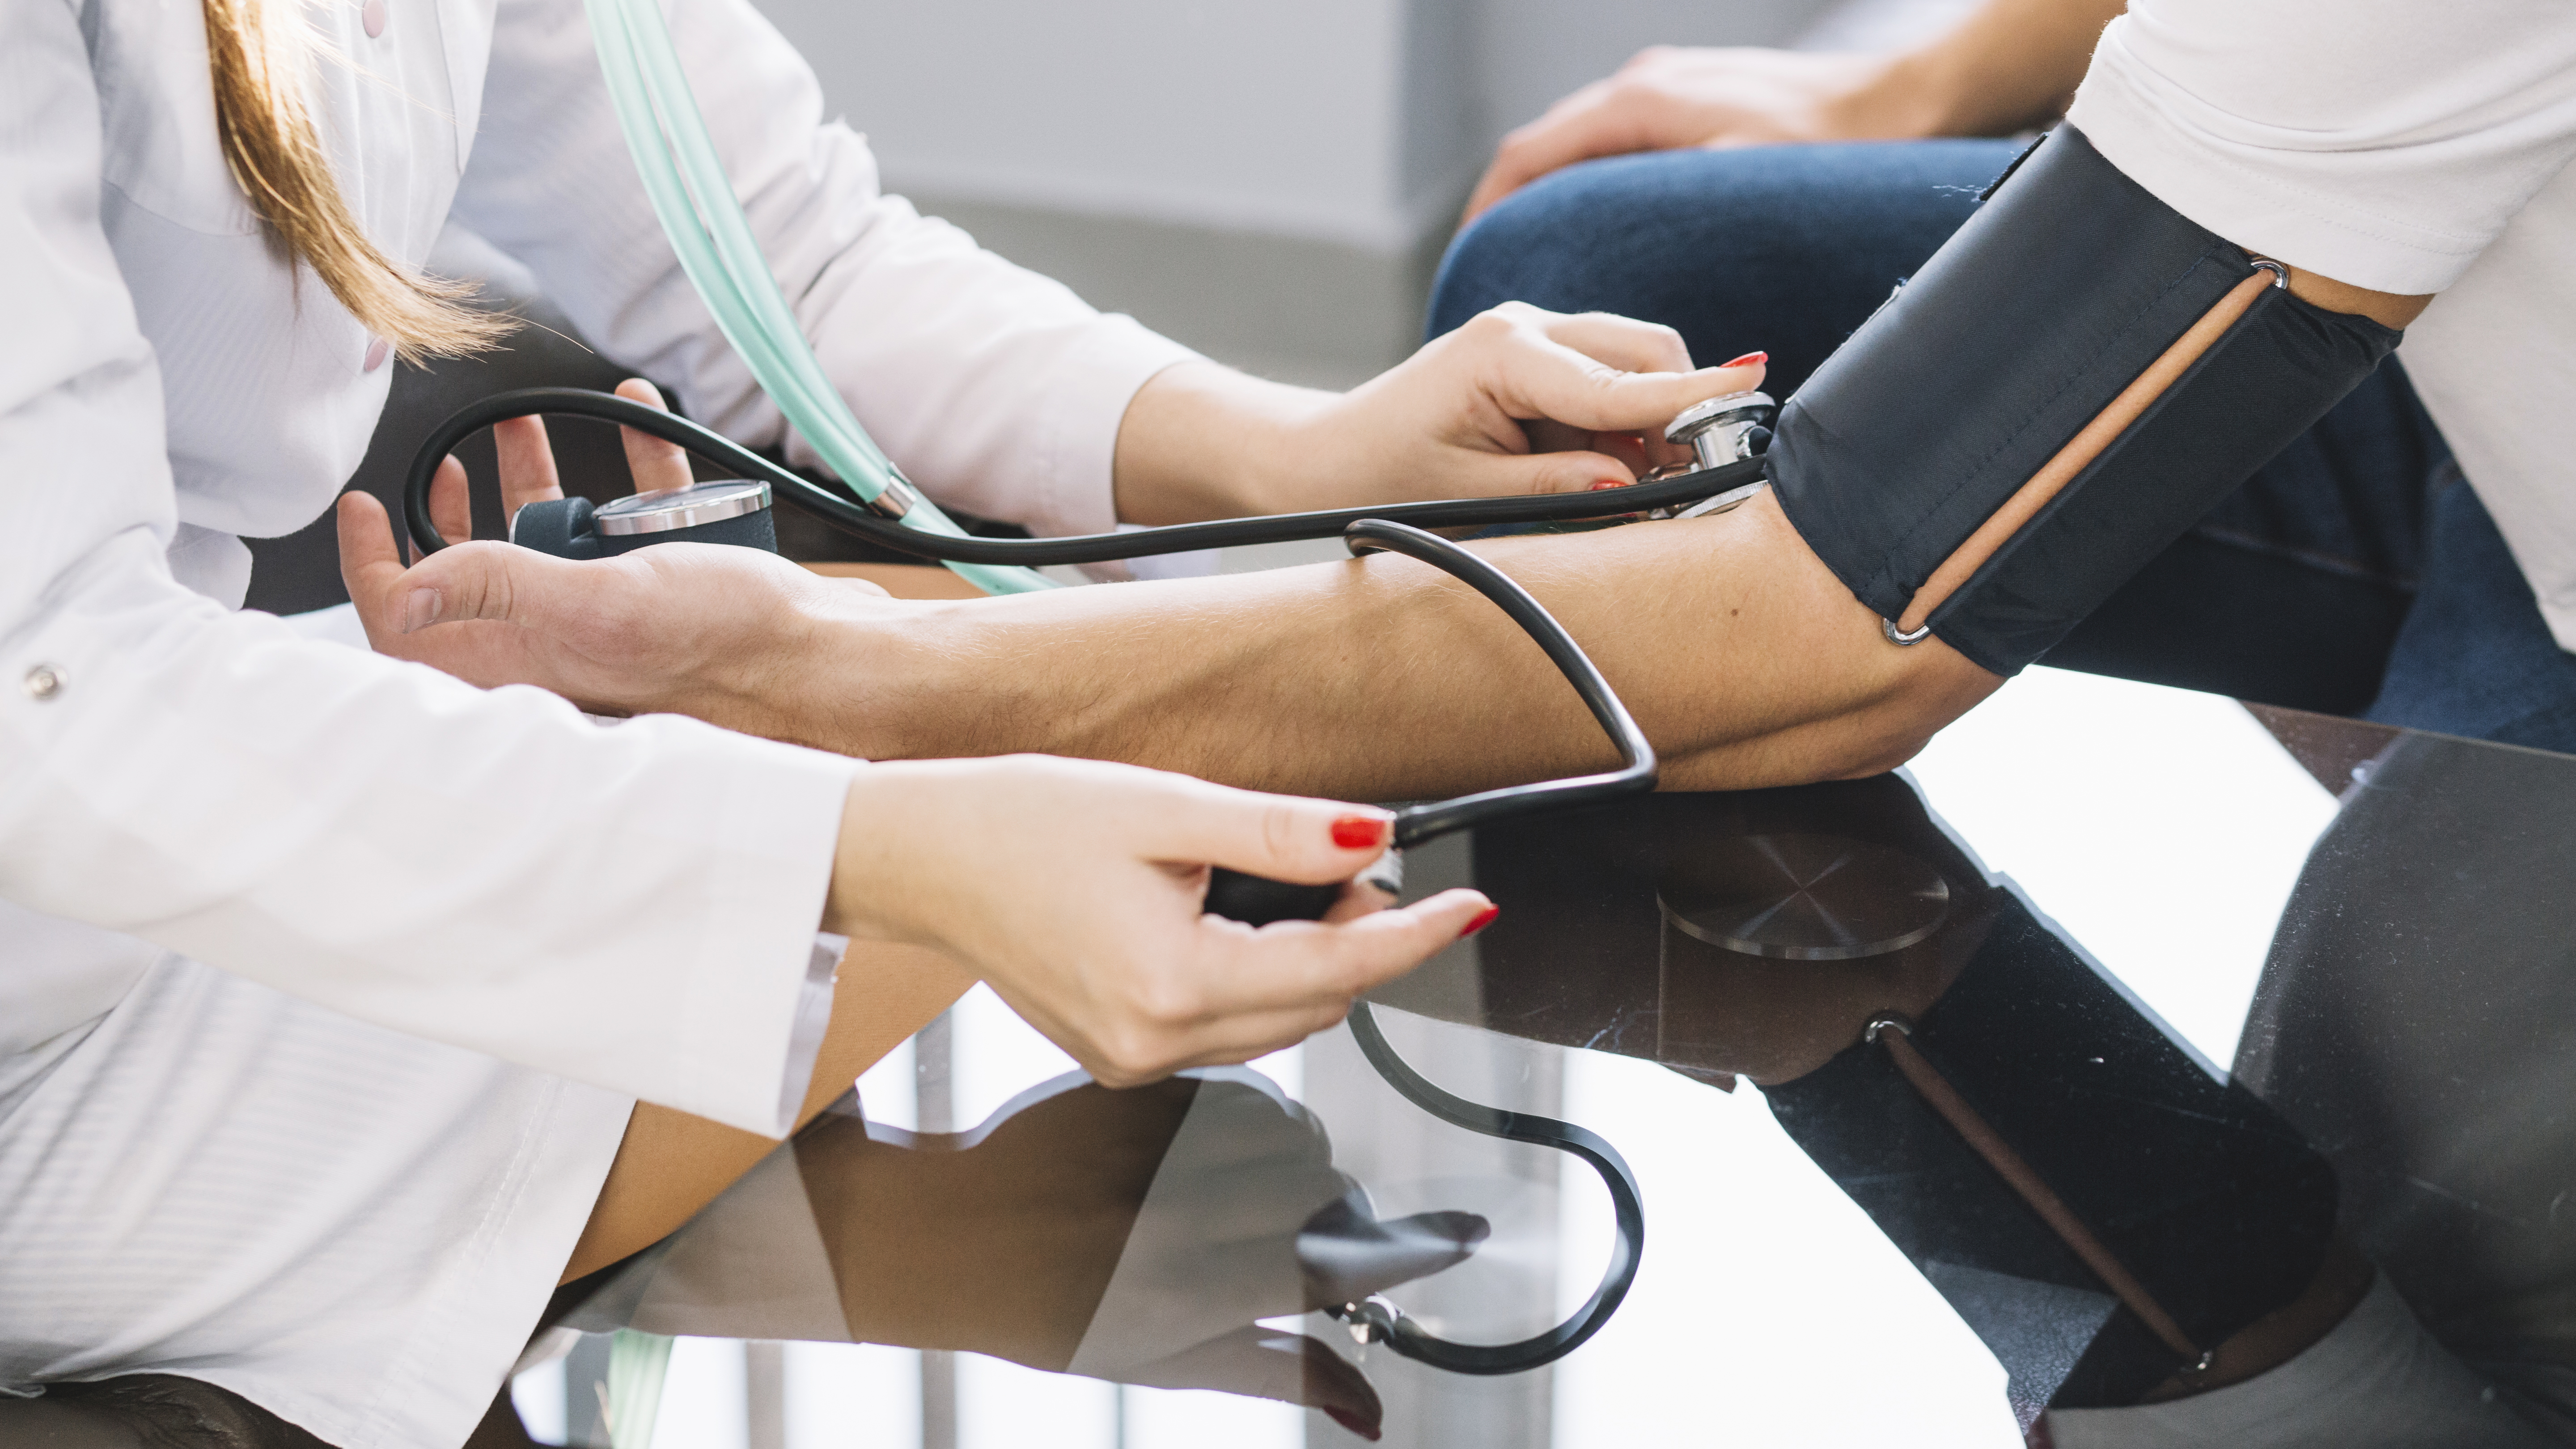 Hipertensão arterial: Causas, sintomas e prevenção